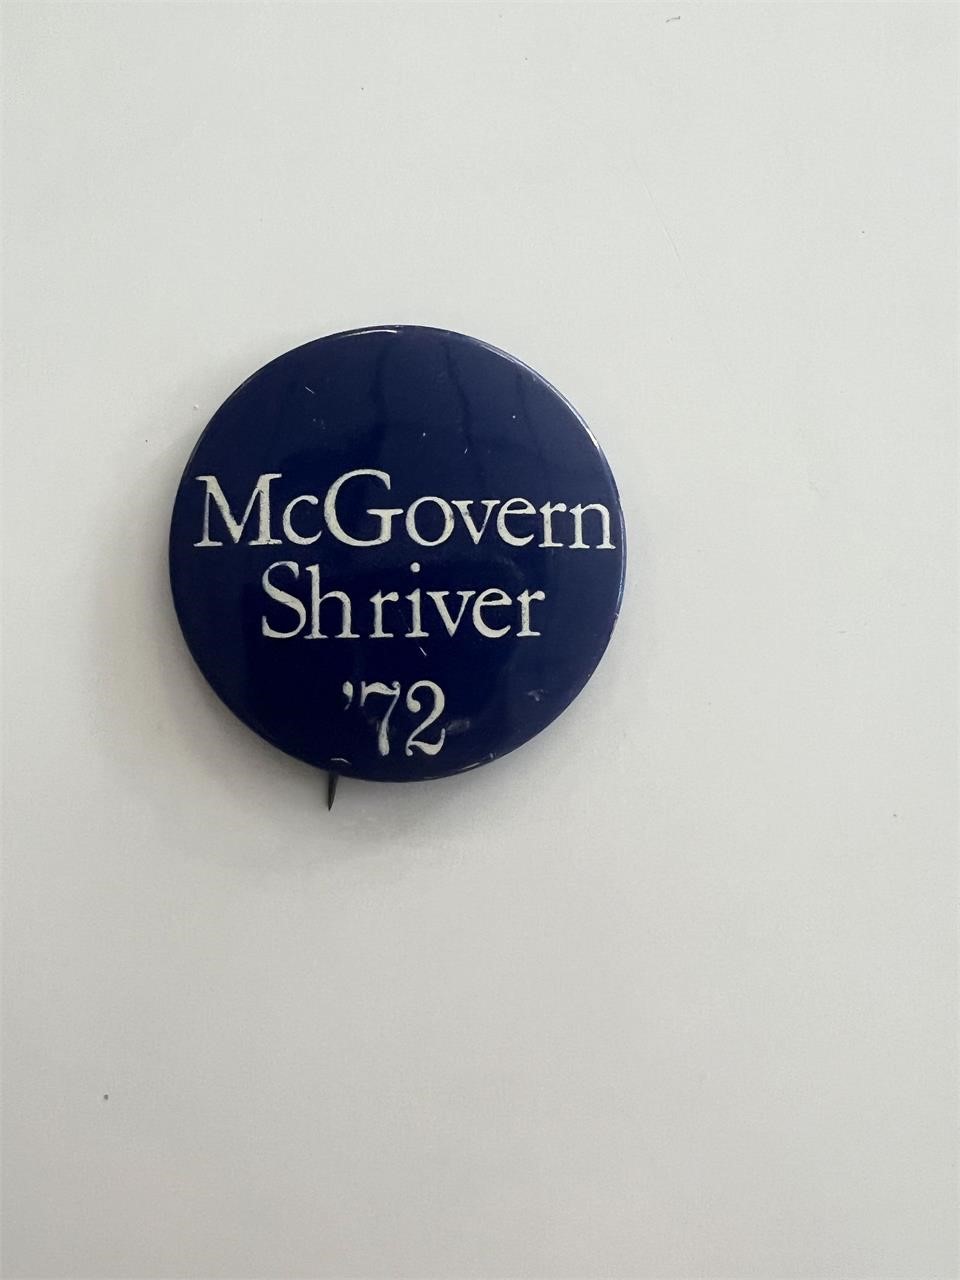 1972 McGovern Shriver political pin